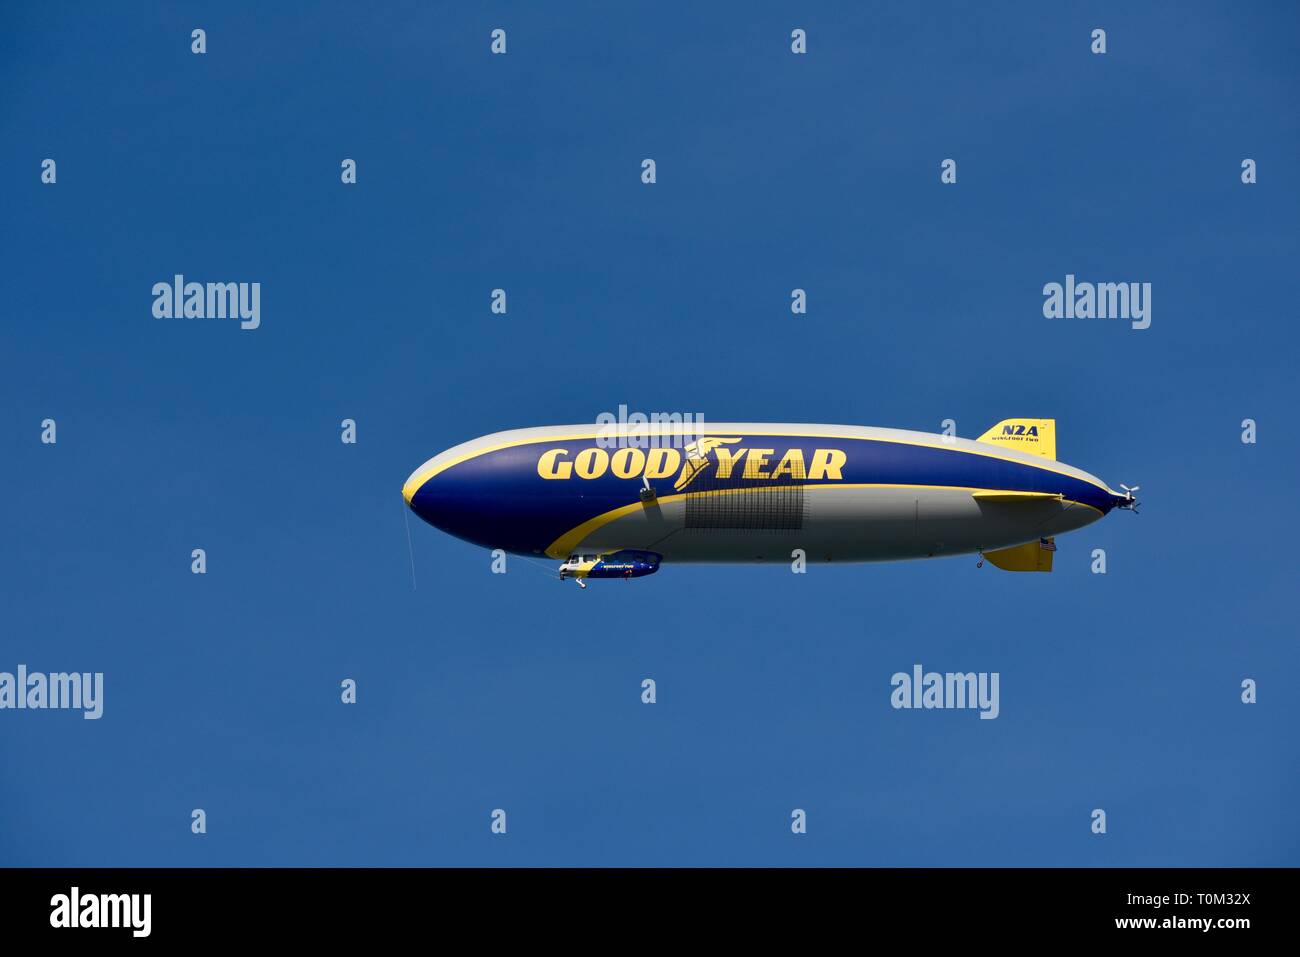 Goodyear famoso dirigible dirigible Soaring sobrecarga en vuelo en el brillante cielo azul, fuera de un evento deportivo, un torneo de golf PGA, San Diego, CA, EE.UU. Foto de stock